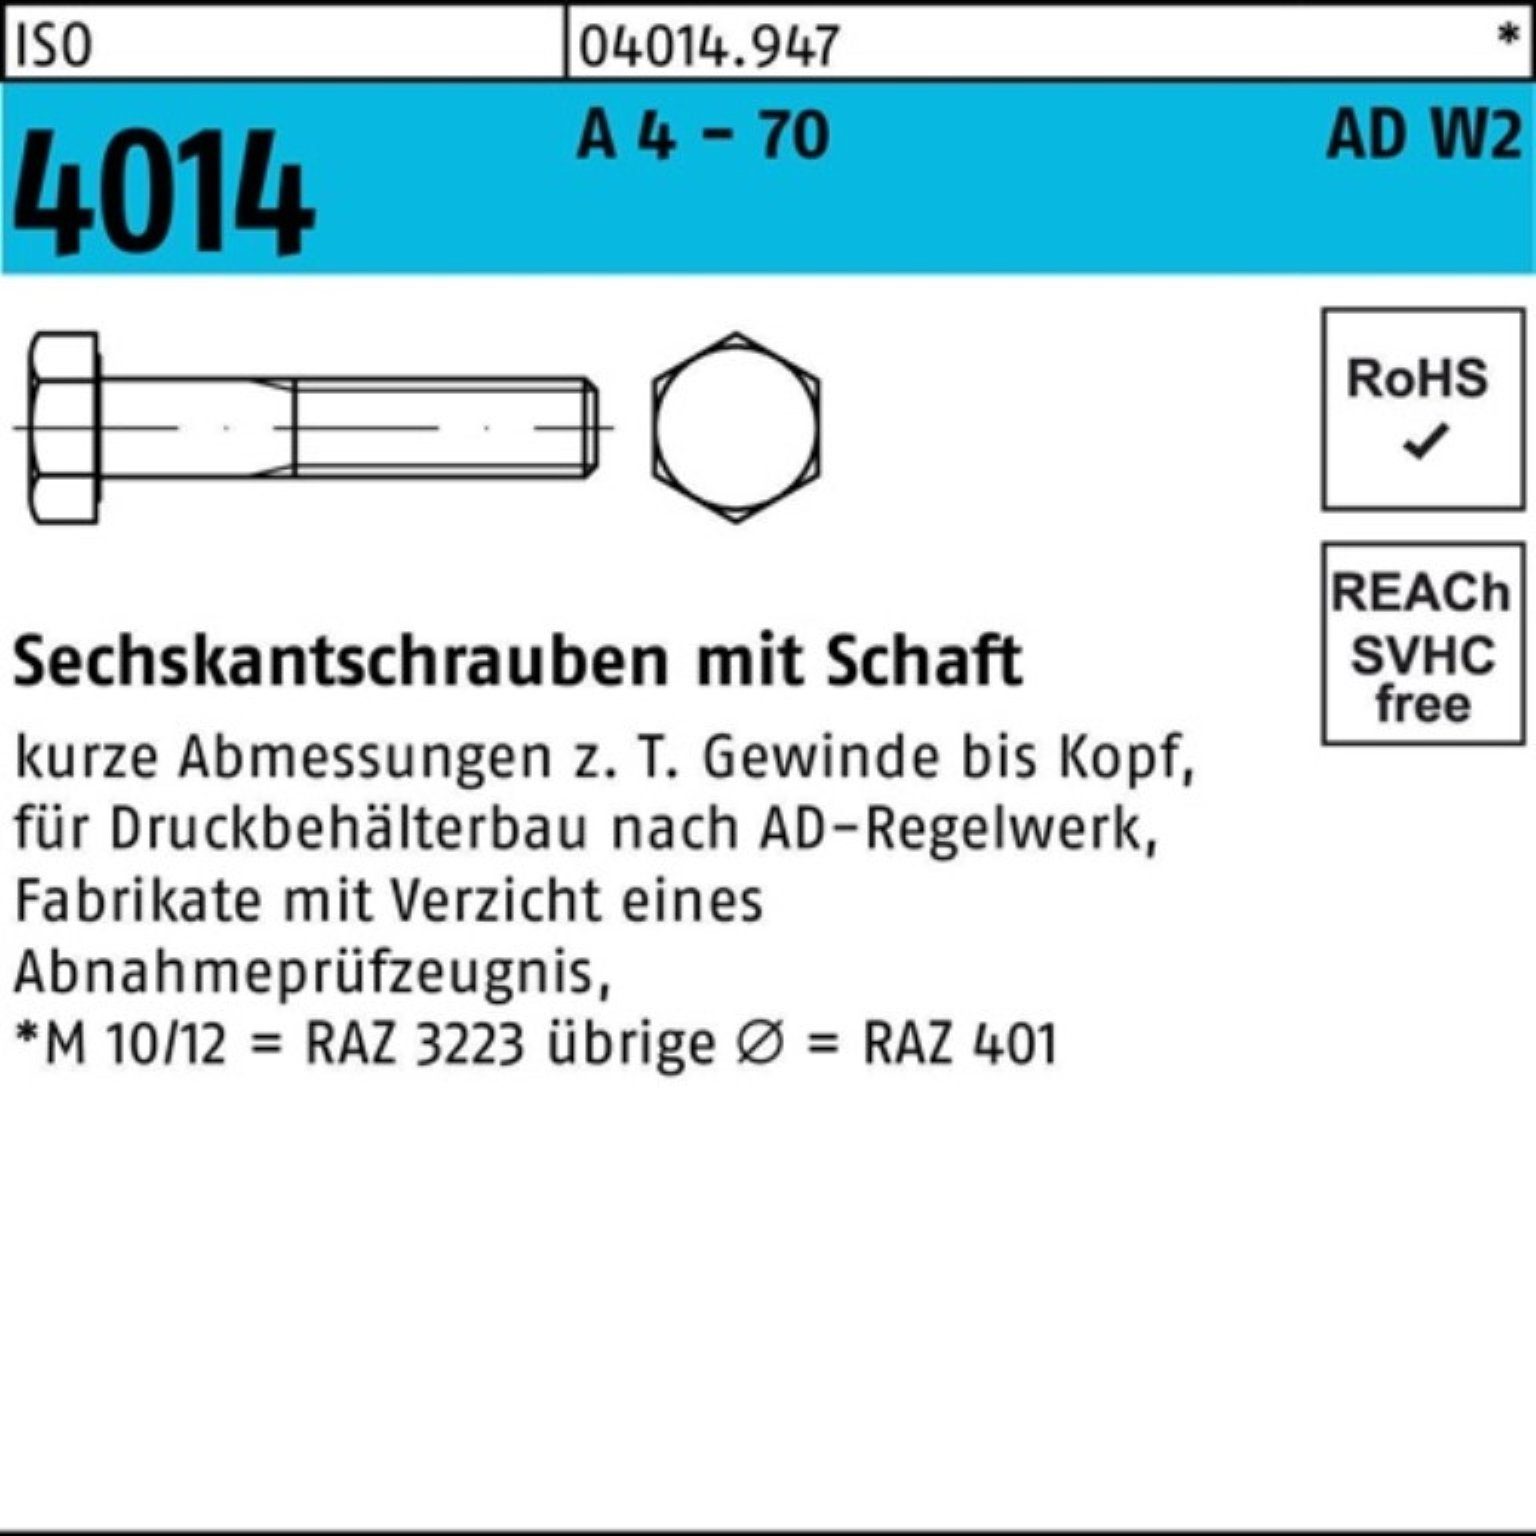 Bufab Sechskantschraube 100er Pack Sechskantschraube ISO 4014 Schaft M24x 150 A 4 - 70 AD-W2 1